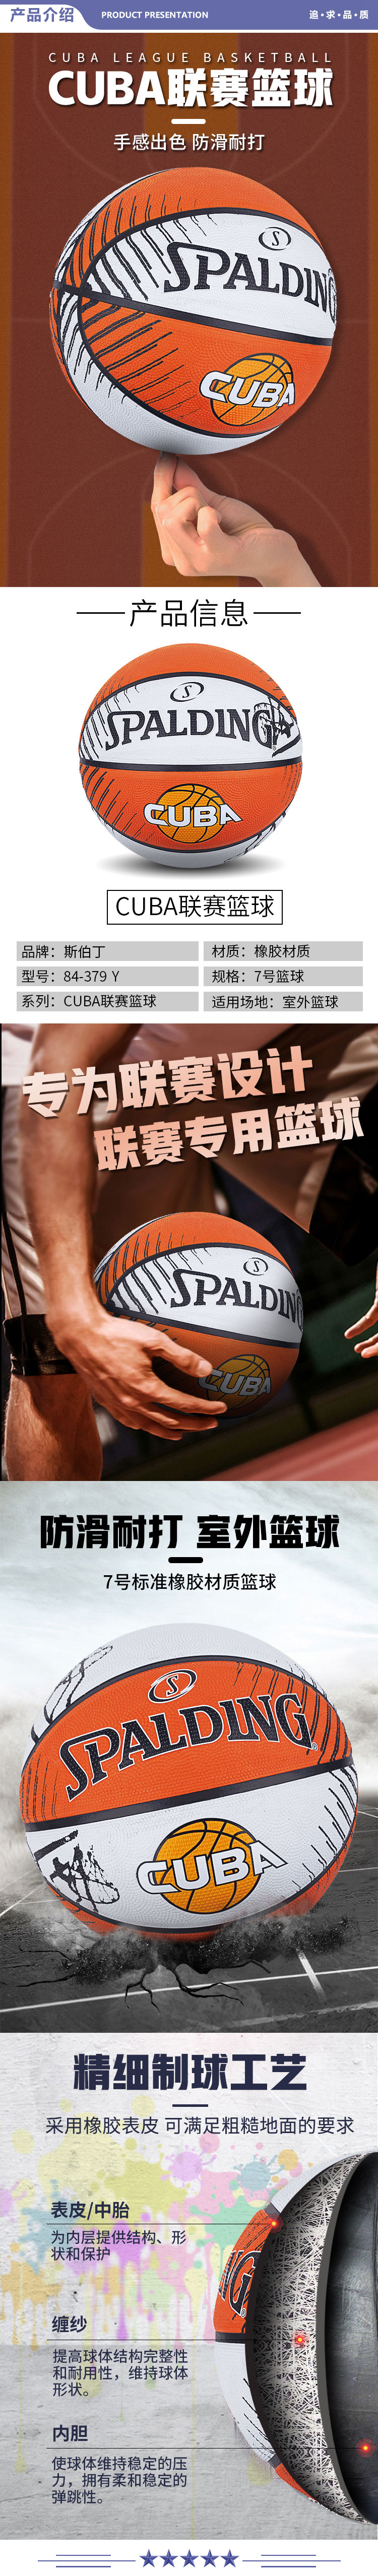 斯伯丁 84-379Y SPALDING篮球CUBA联赛7号橡胶耐磨篮球室外用橘白色 2.jpg